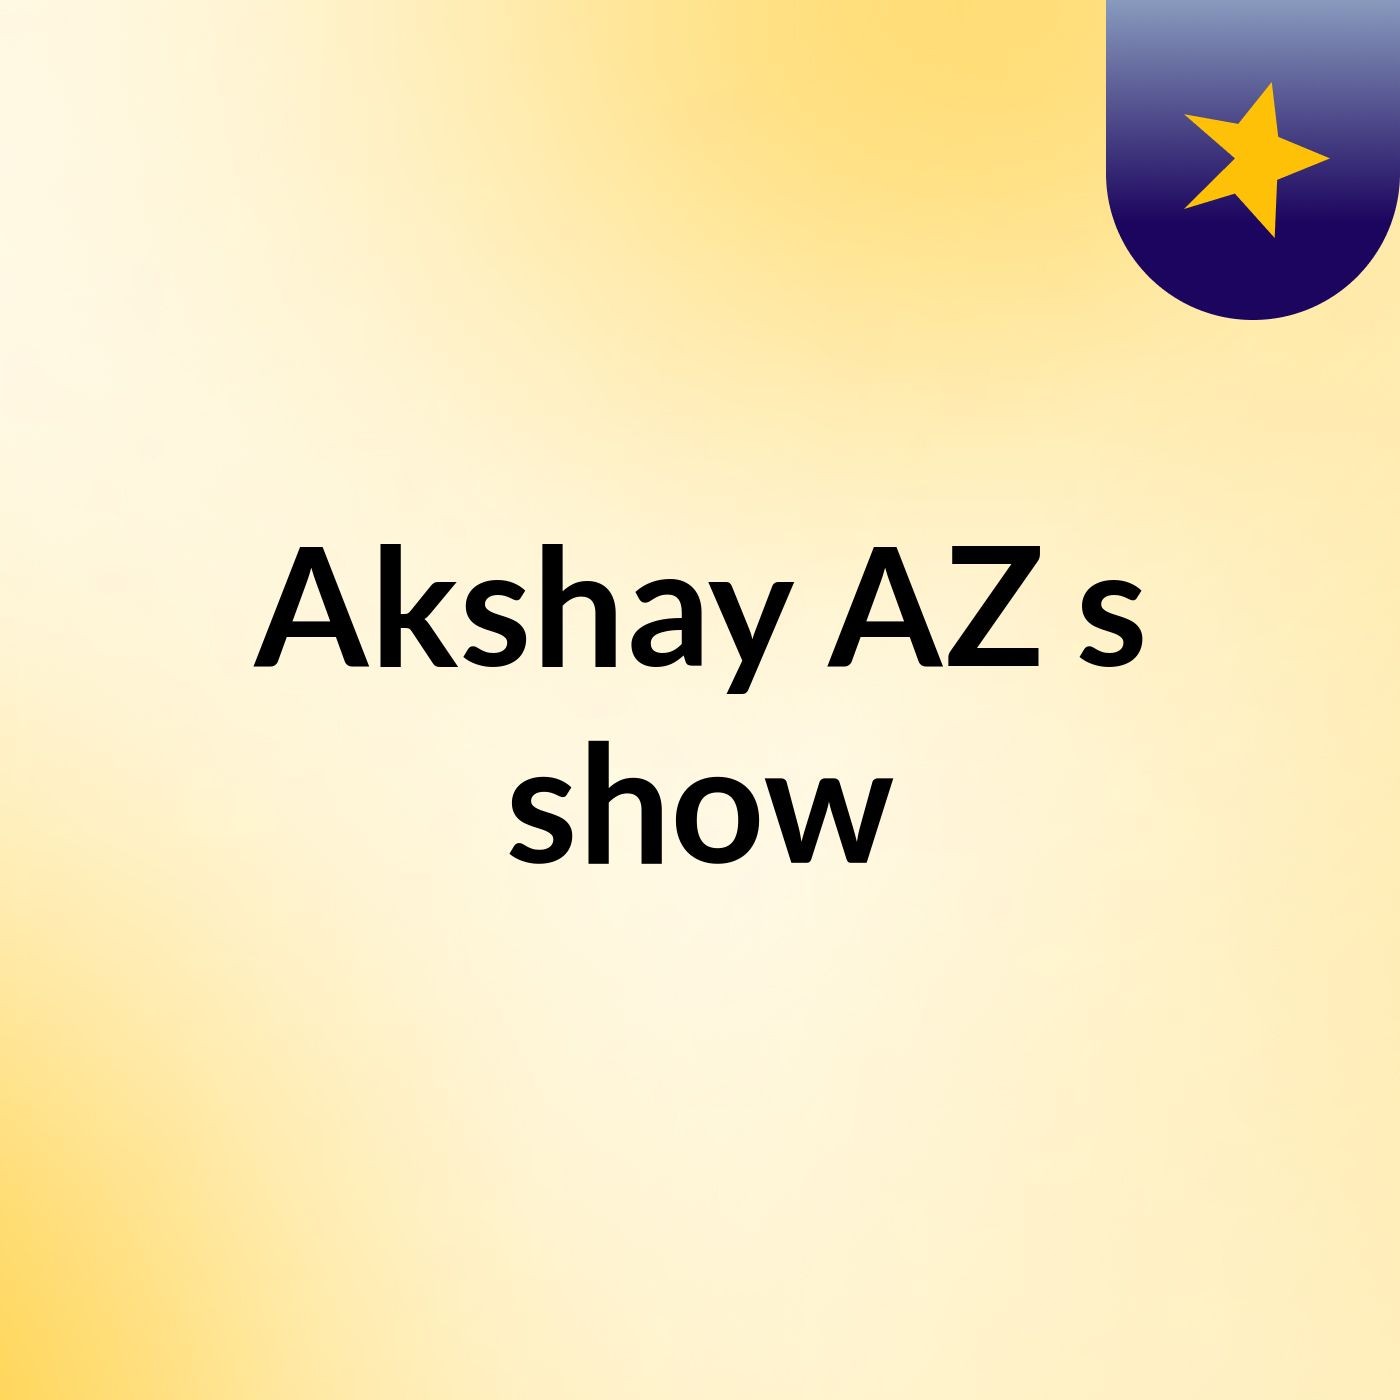 Akshay AZ's show